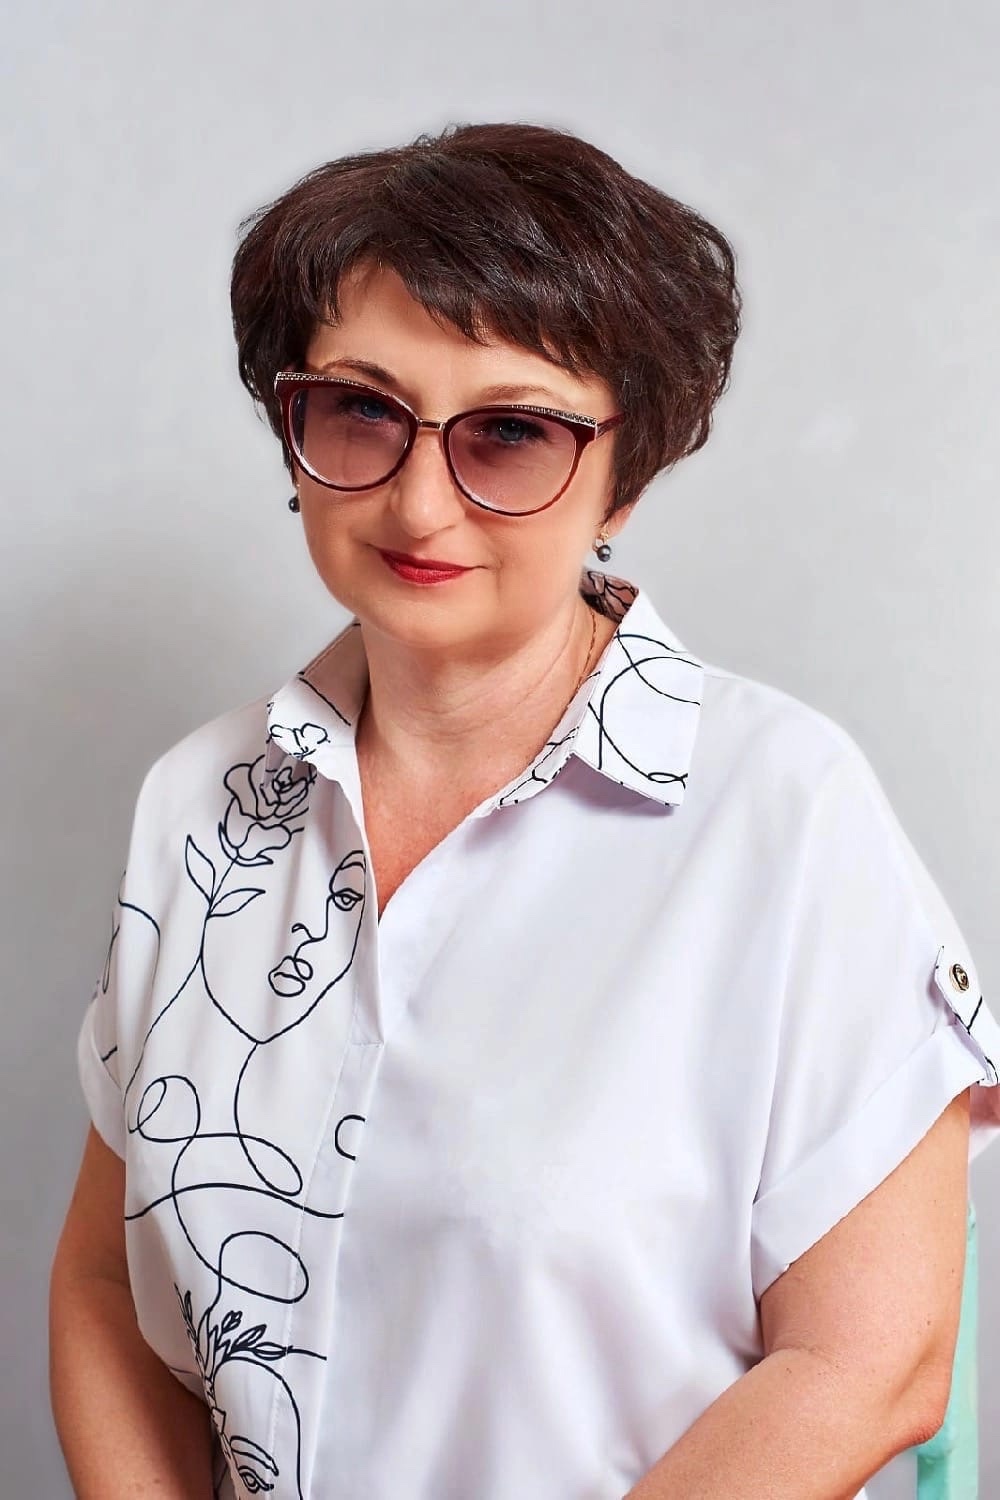 Романенко Елена Николаевна